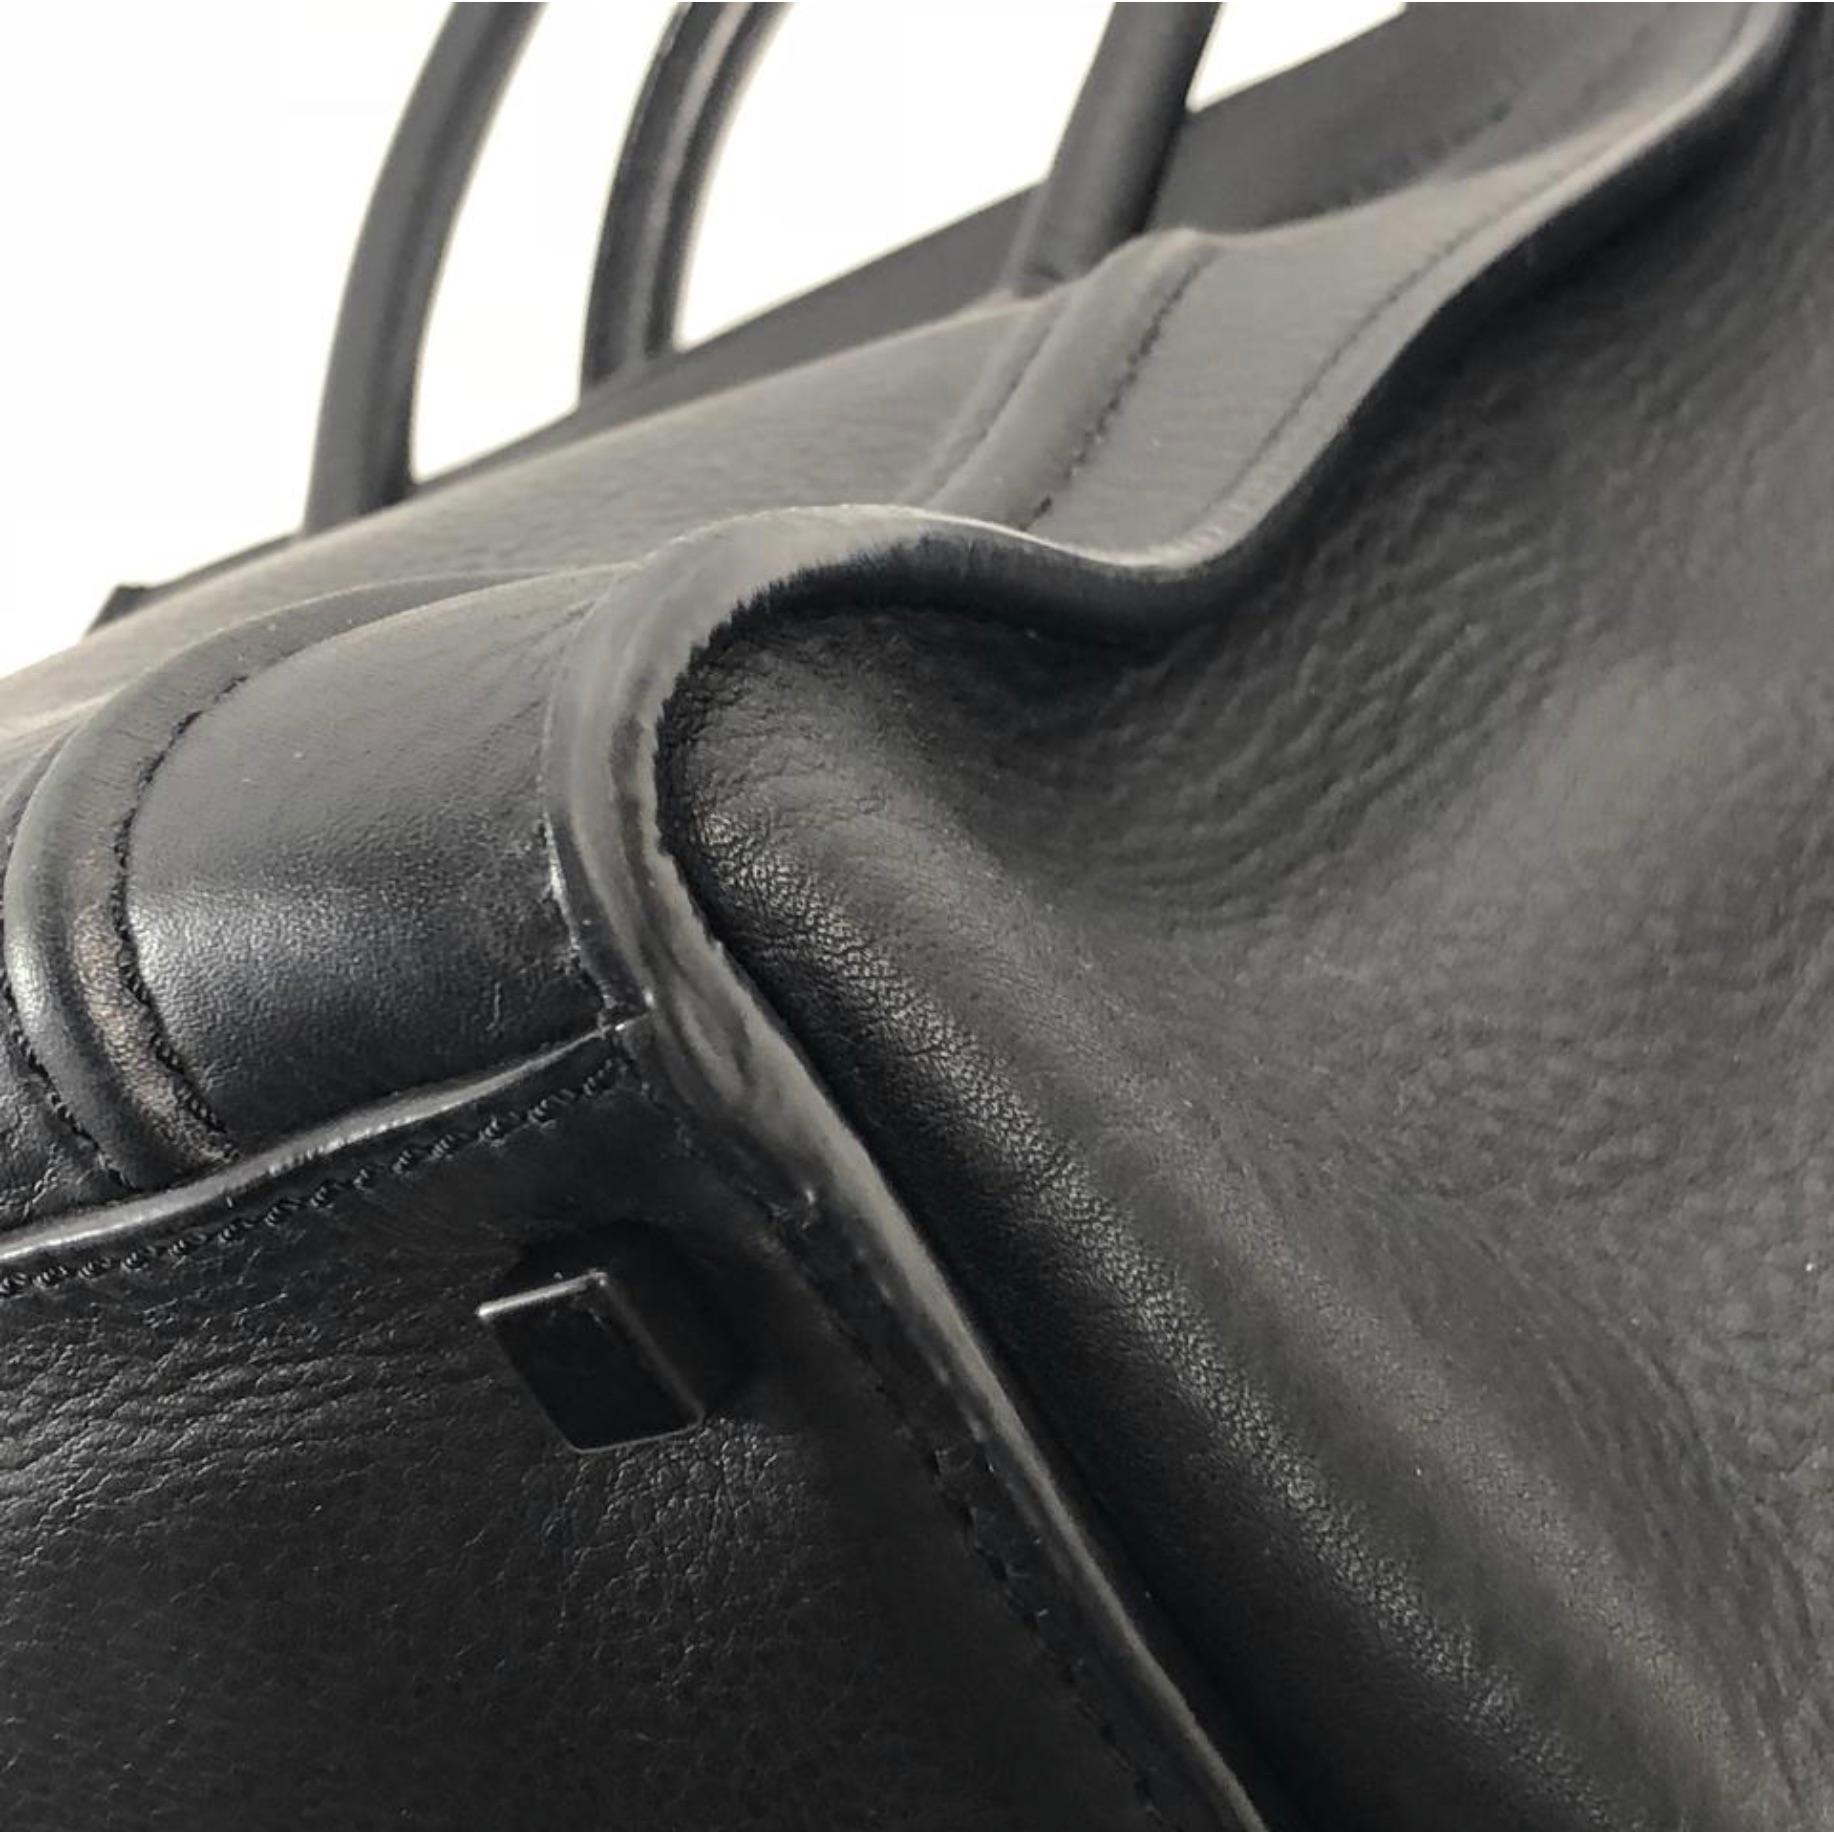 Celine Leather Phantom Medium Black Satchel Tote Handbag 5